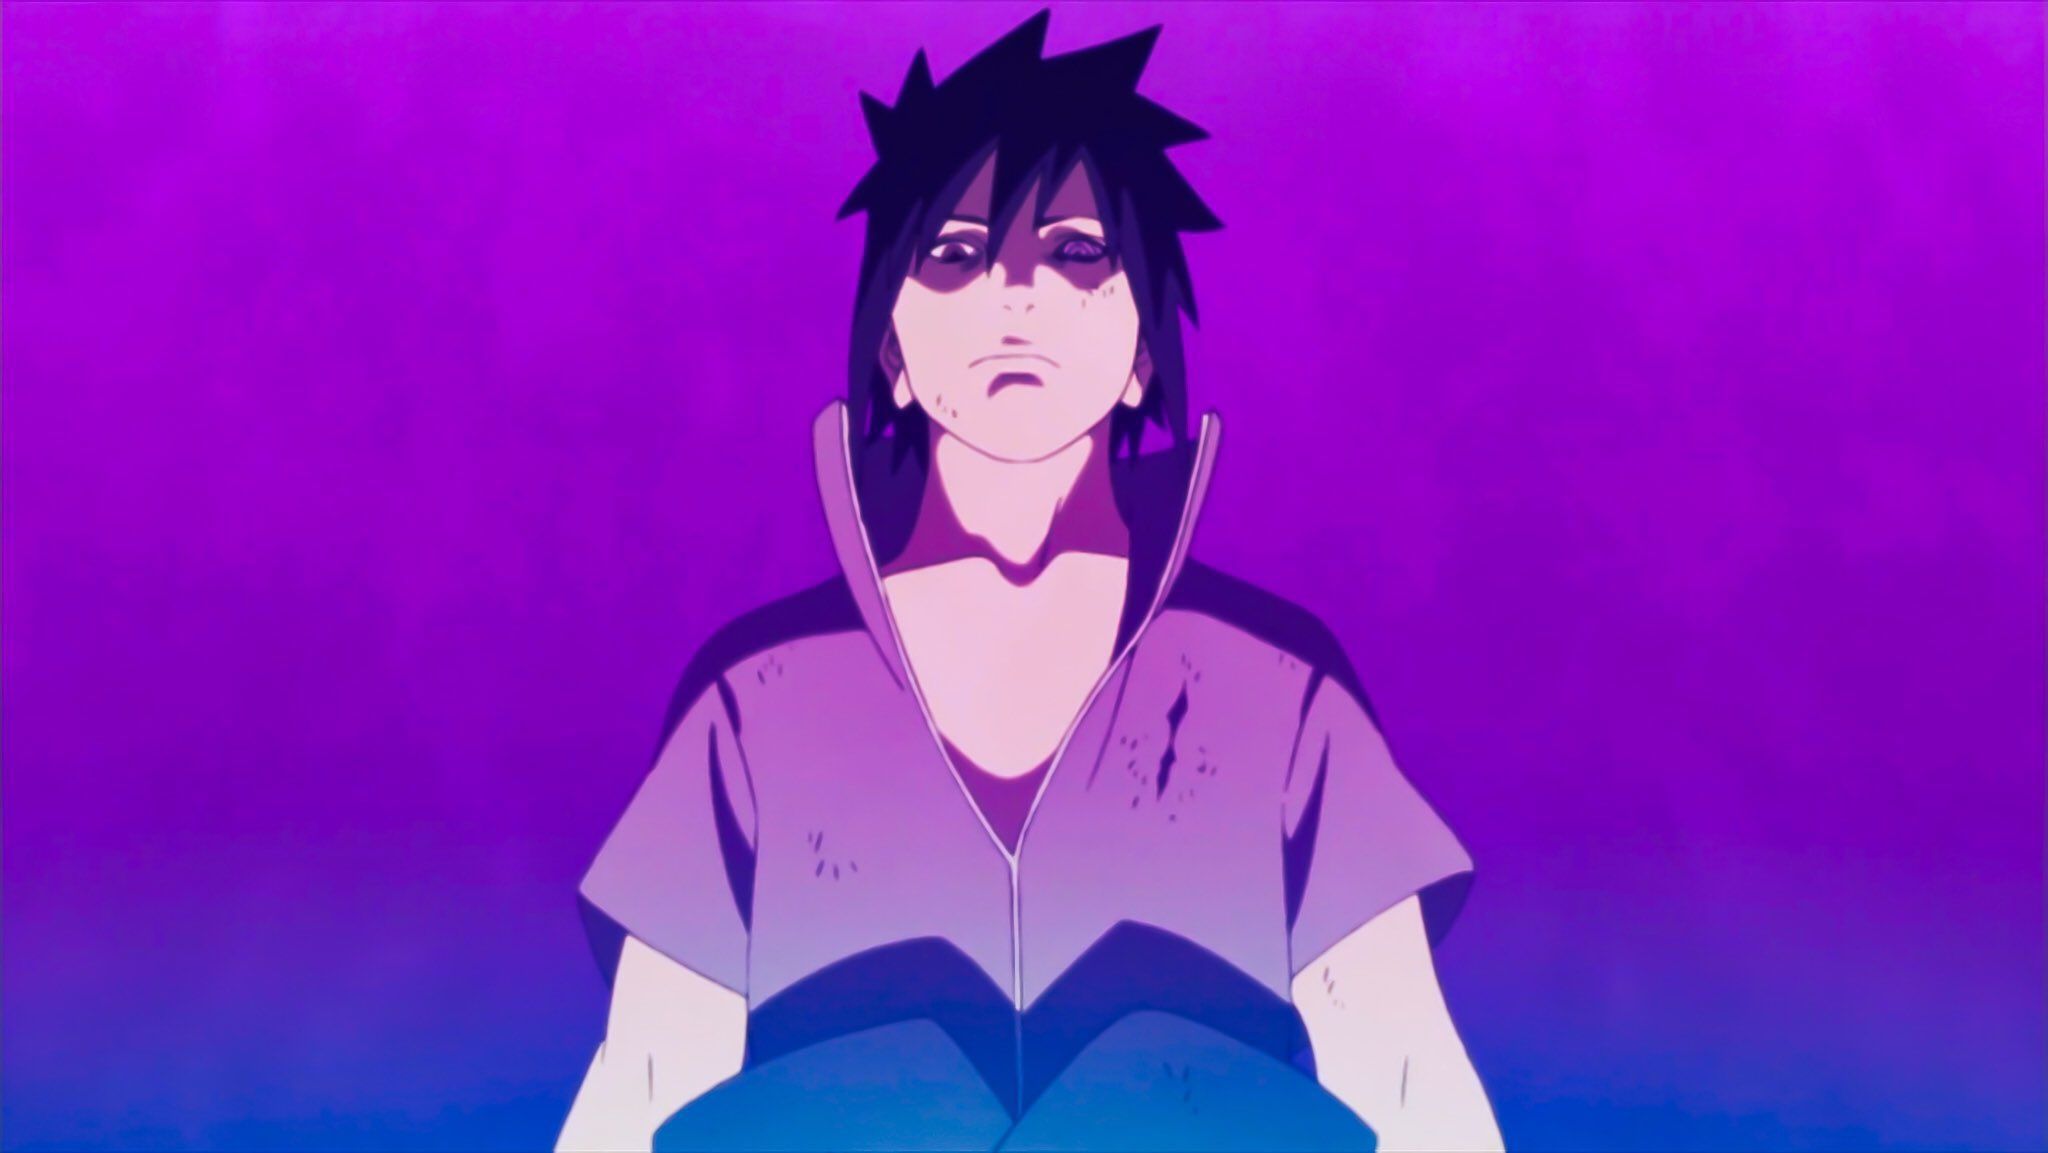 Sasuke with a hood on his head - Sasuke Uchiha